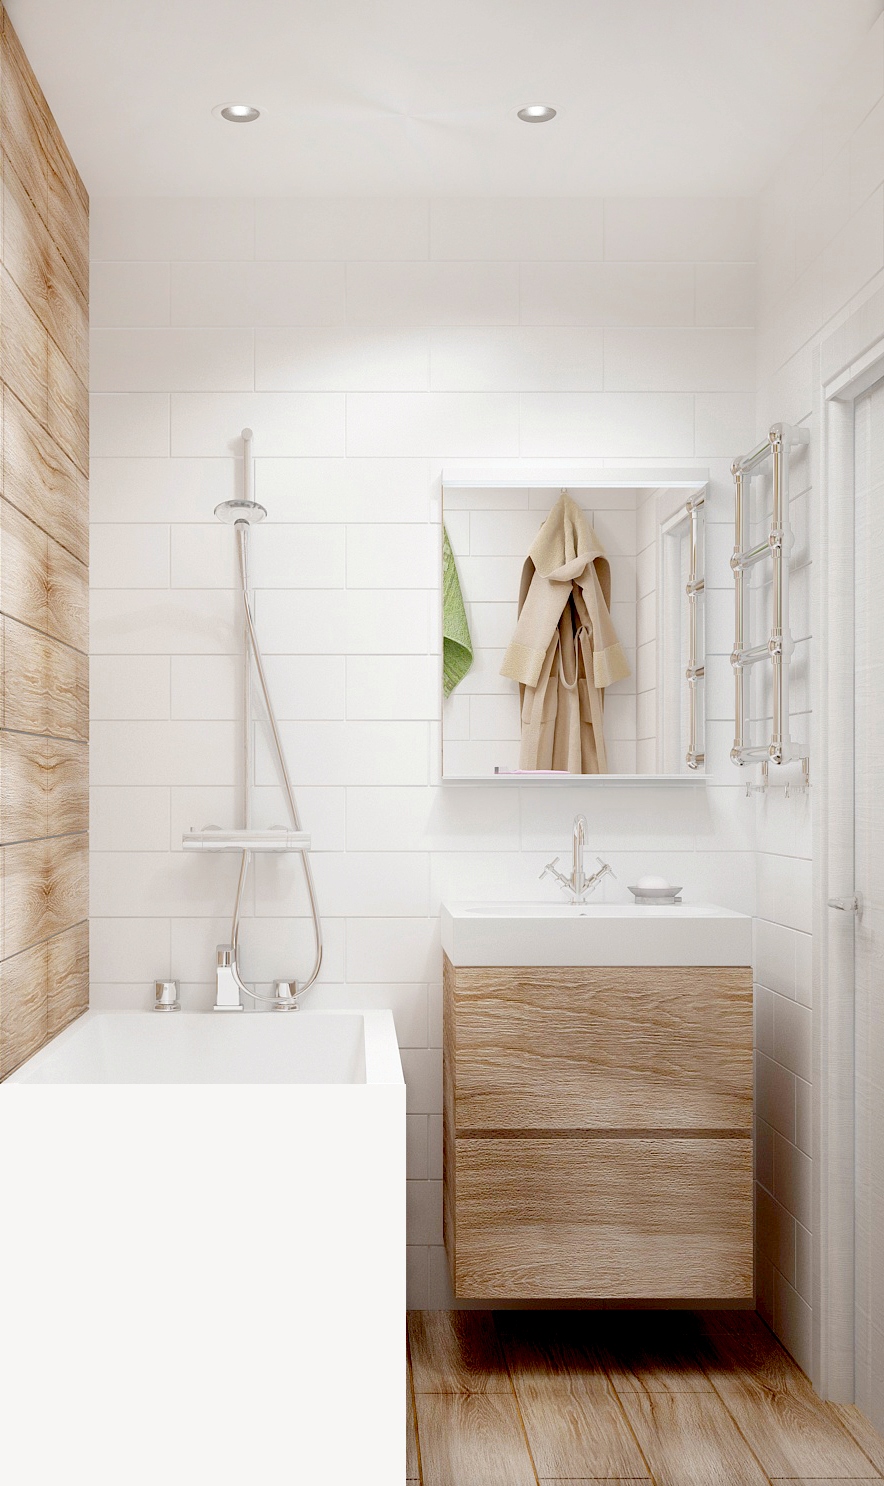 Визуализация ванной комнаты 3 кв.м в белых и бежевых тонах, раковина, тумба, ванна, зеркало, светильники 